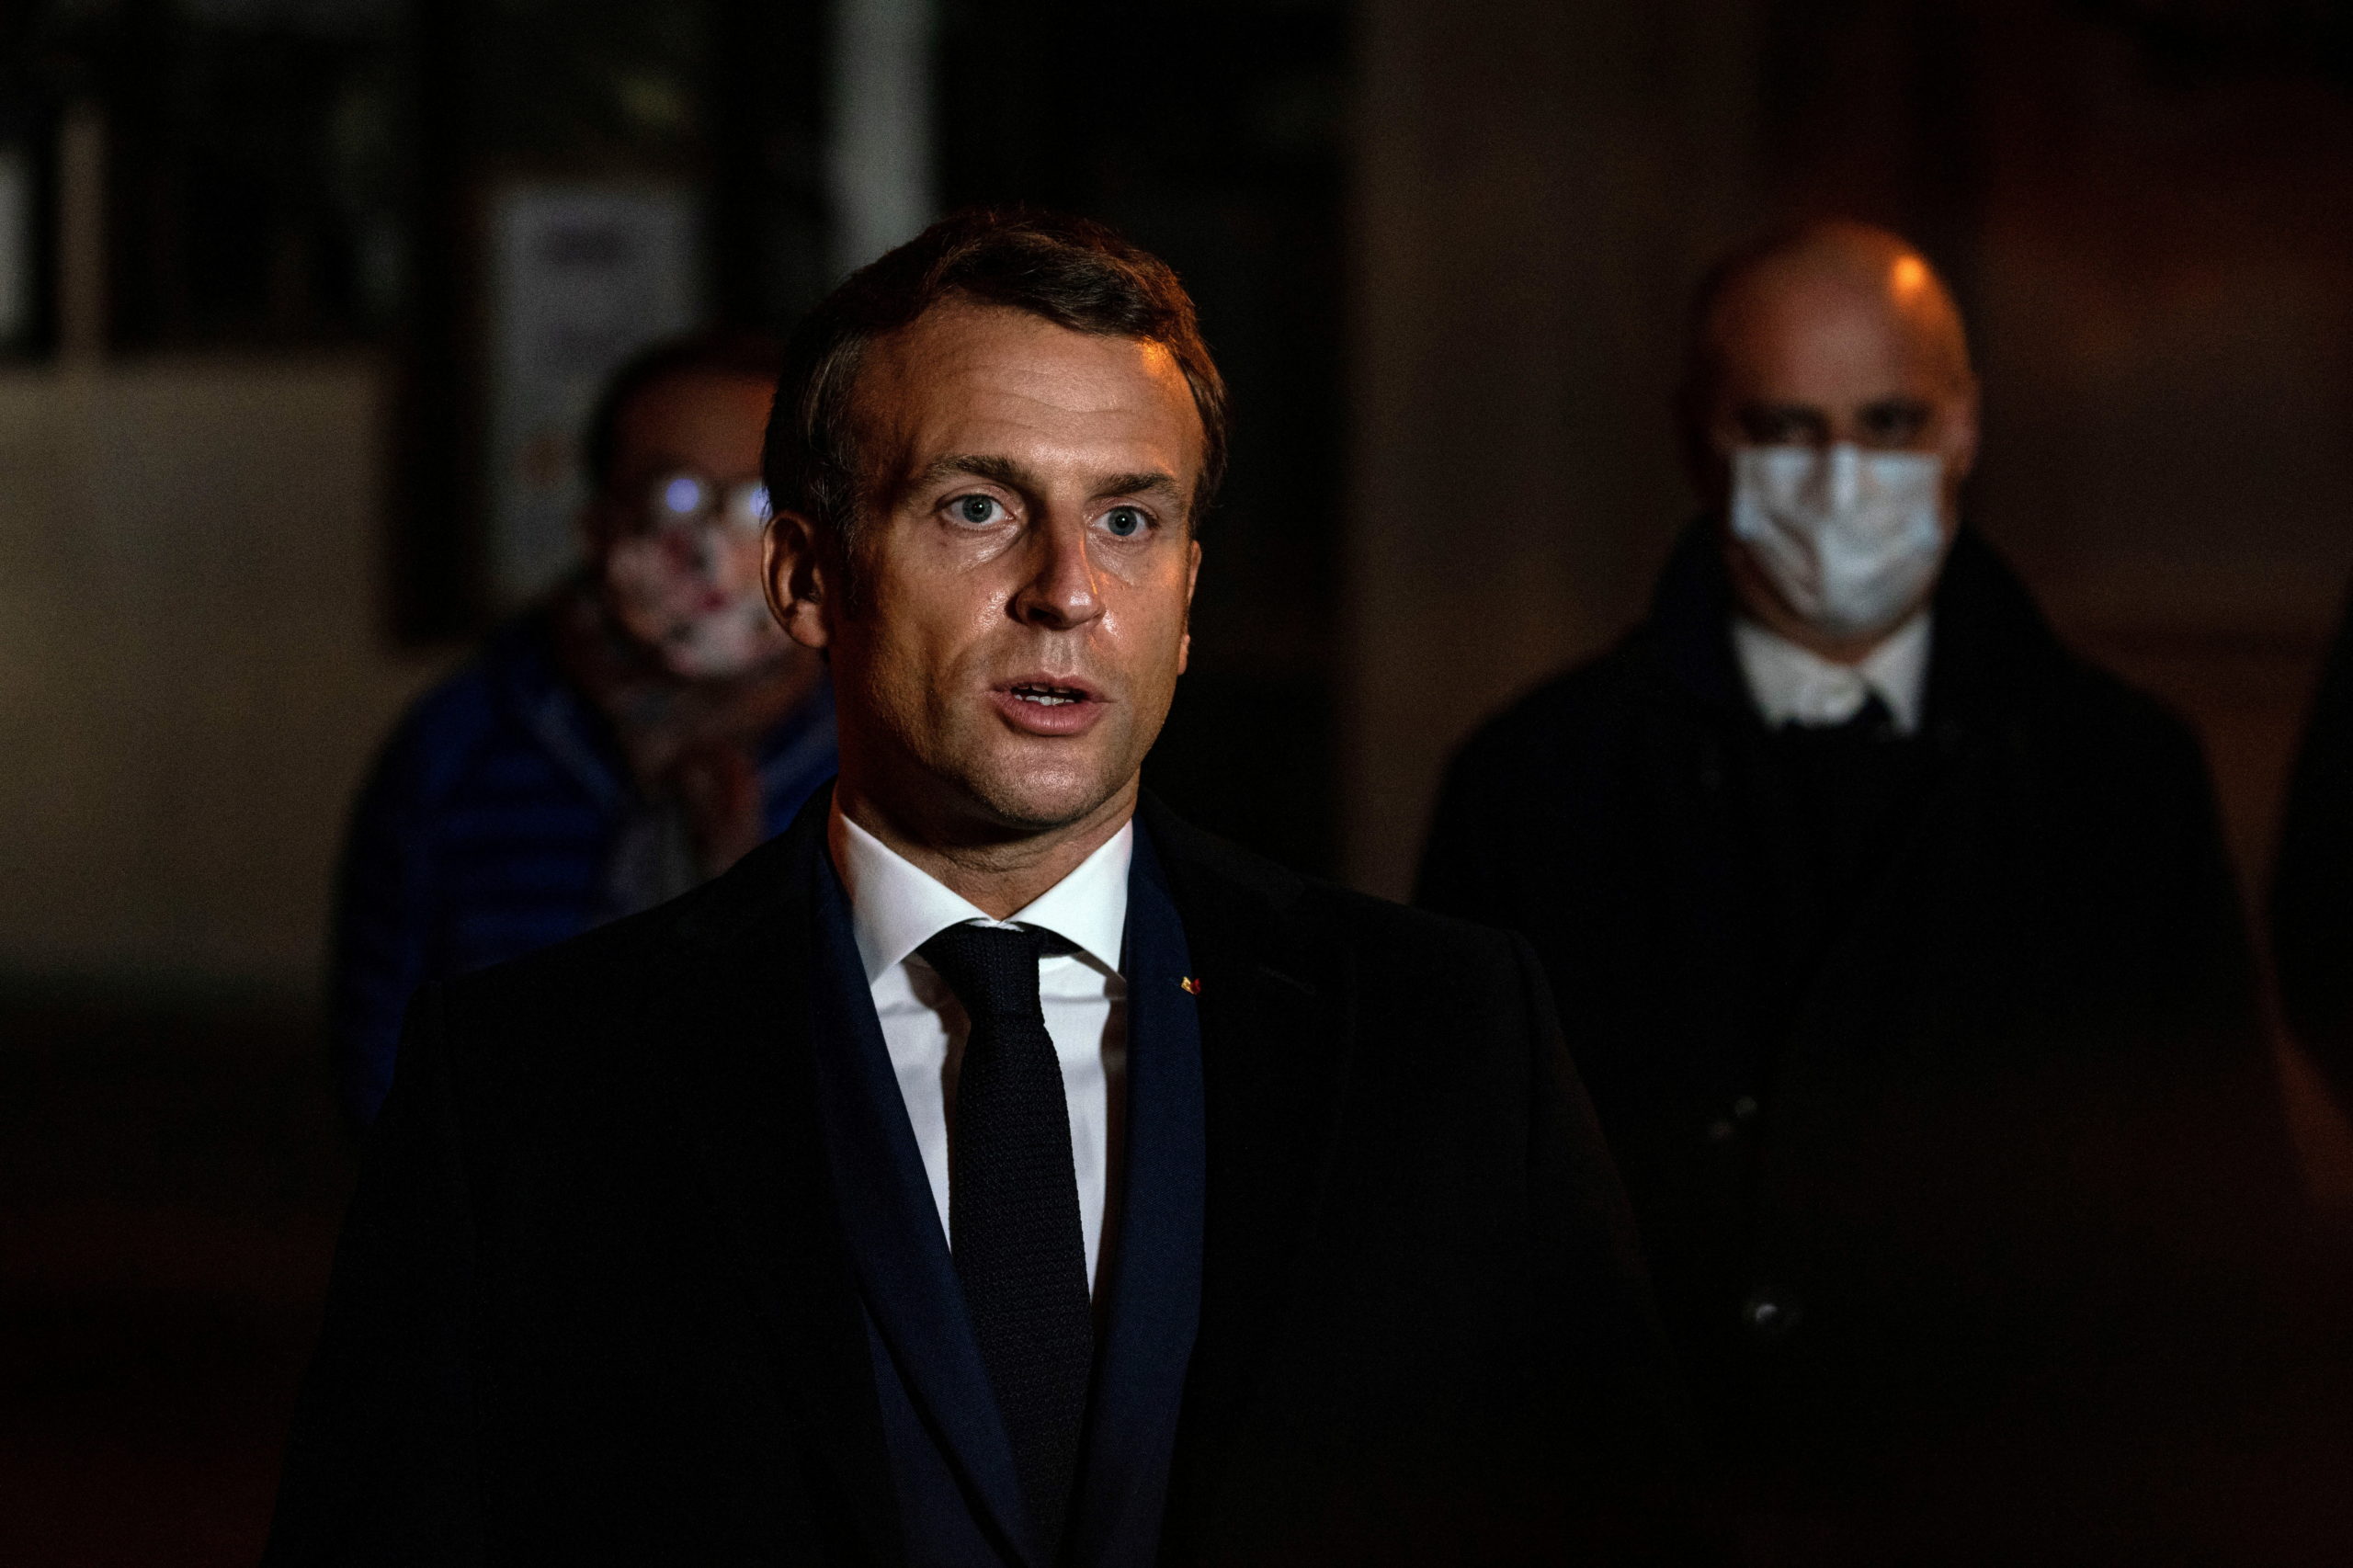 Macron à Bobigny promet d'intensifier les "actions concrètes" contre l'islam radical